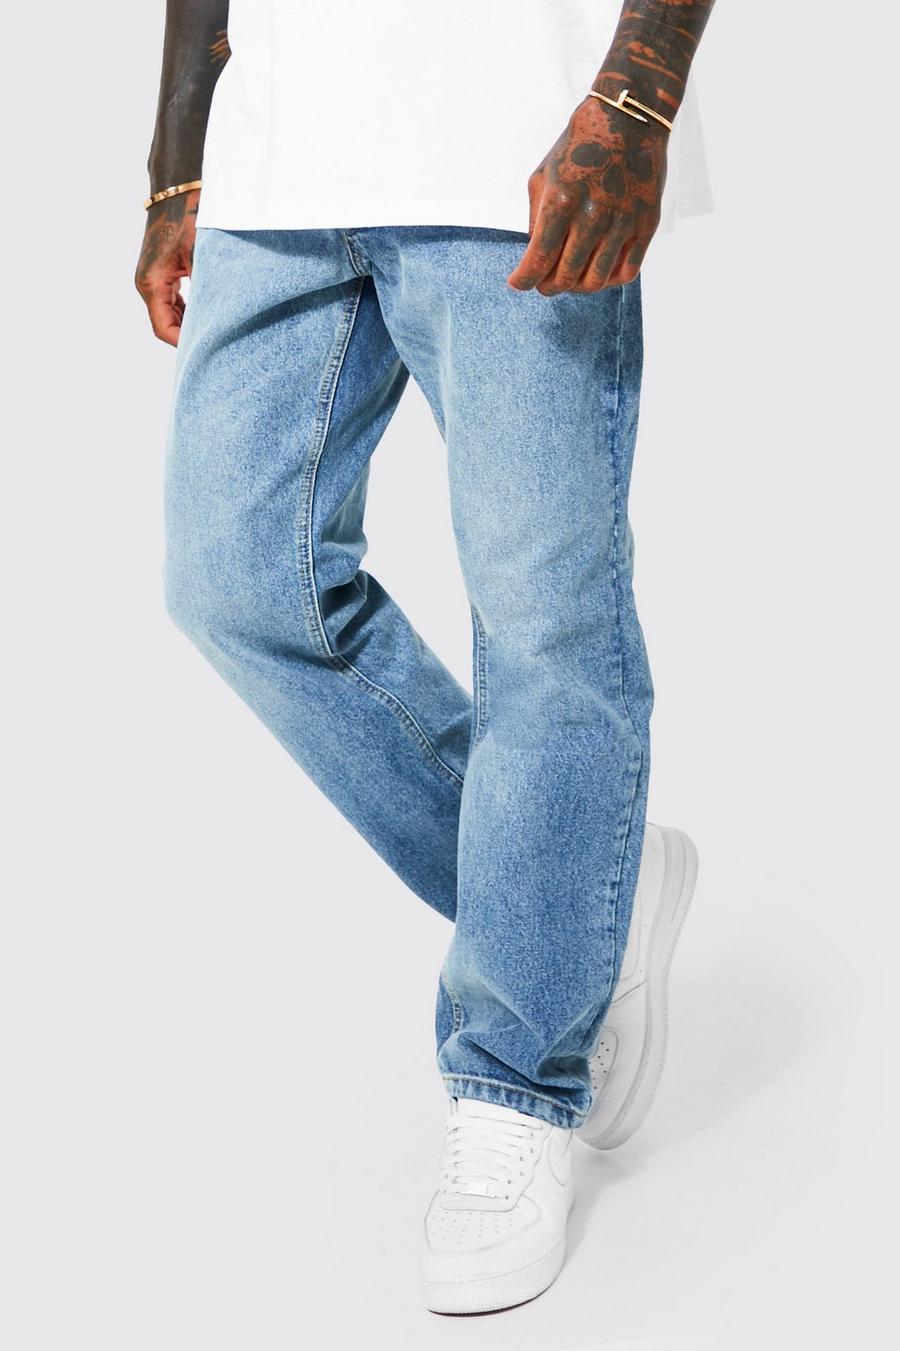 Lockere Jeans, Antique blue